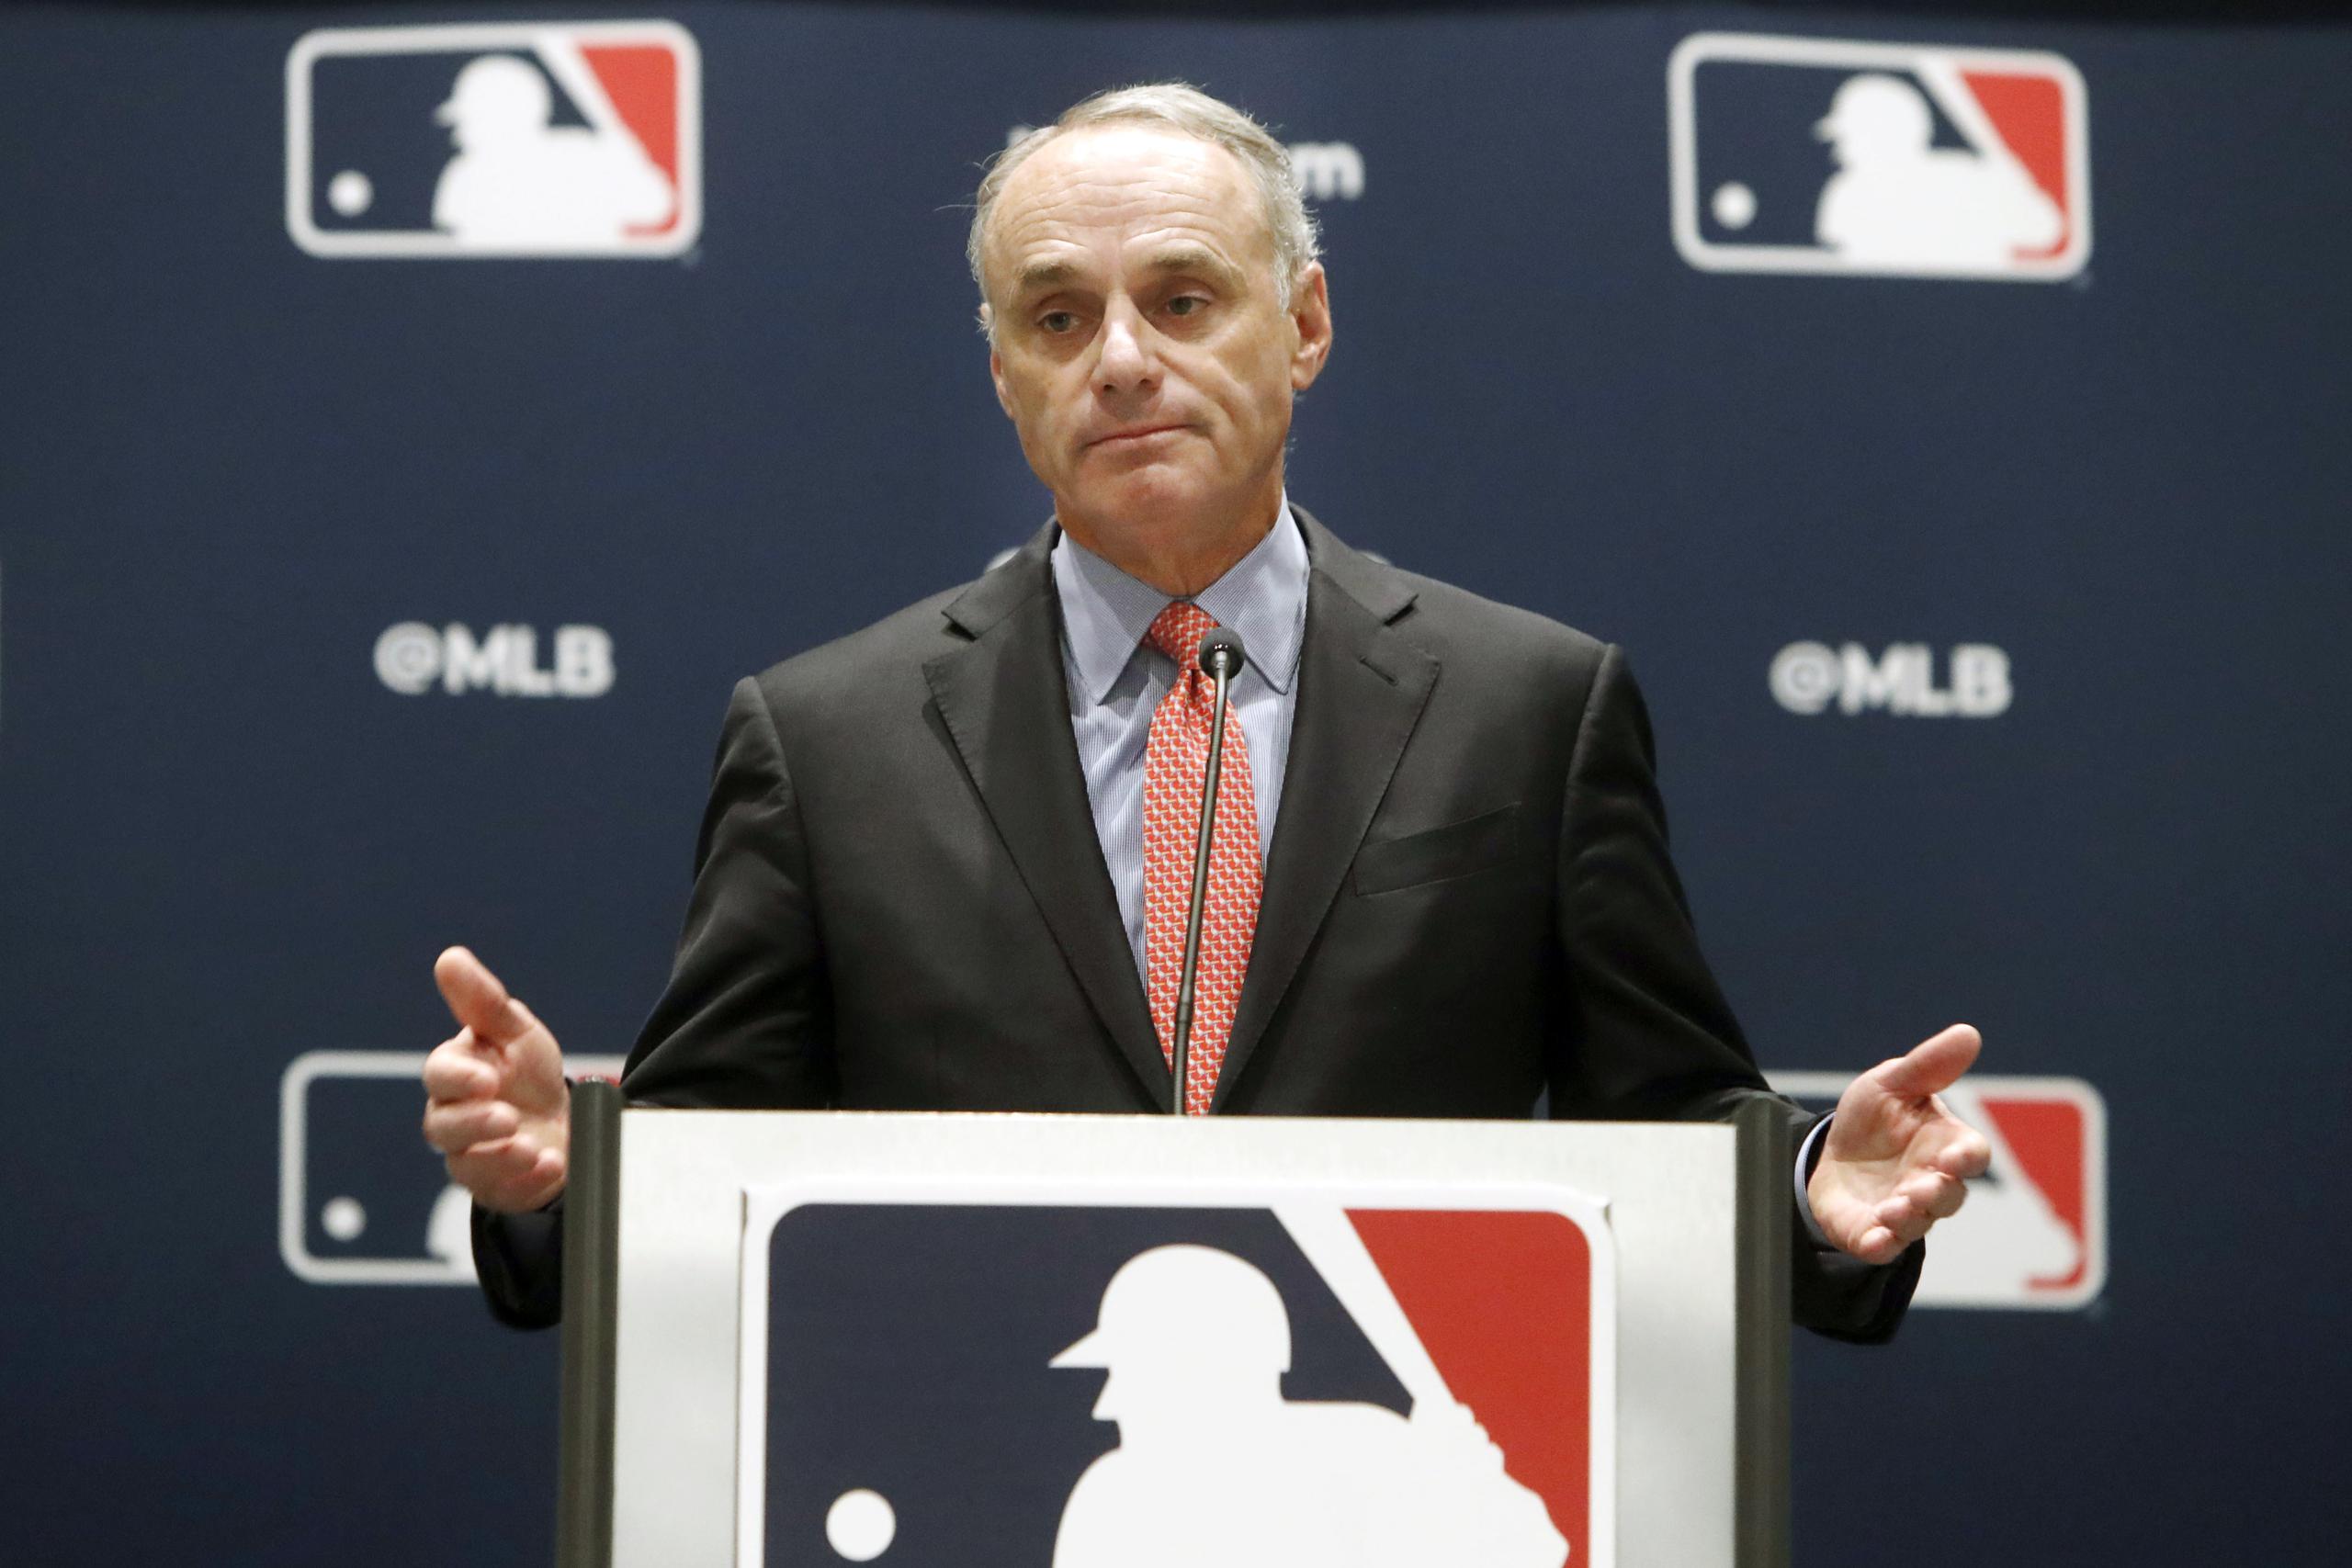 El comisionado de Major League Baseball, Rob Manfred, daría a los equipos la flexibilidad de suspender contratos o recortar salarios como medida para aliviar sus dificultades económicas en medio de la pandemia.